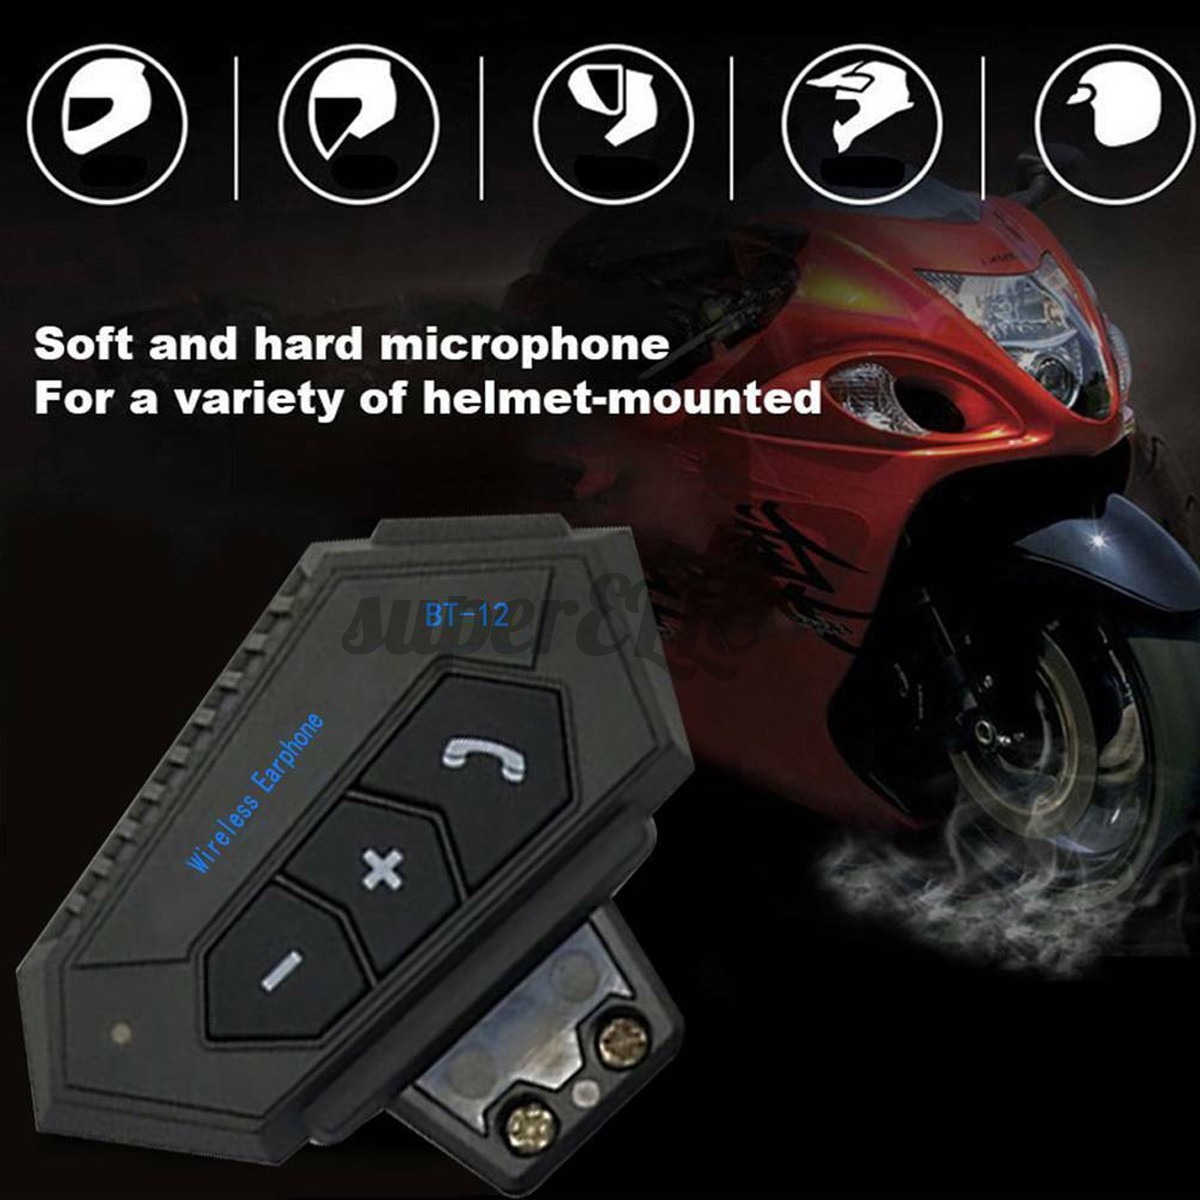 Motorbike Helmet Headset bluetooth Interphone Motorcycle Headphone Hands-Free 